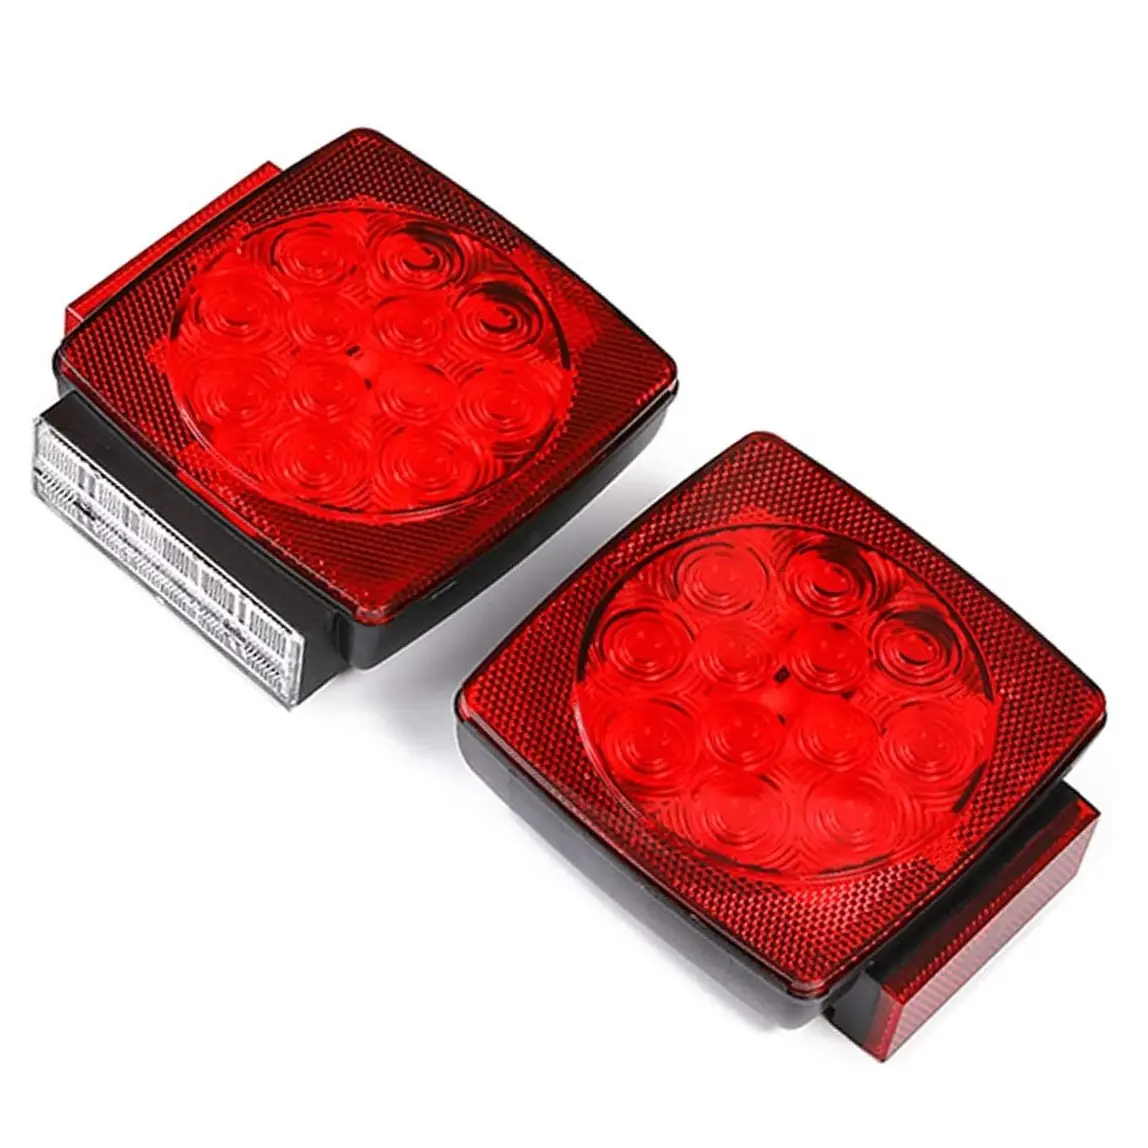 Luces Led rojas sumergibles para remolque, juego de luces traseras para remolque, barco, camión, RTS, 12V